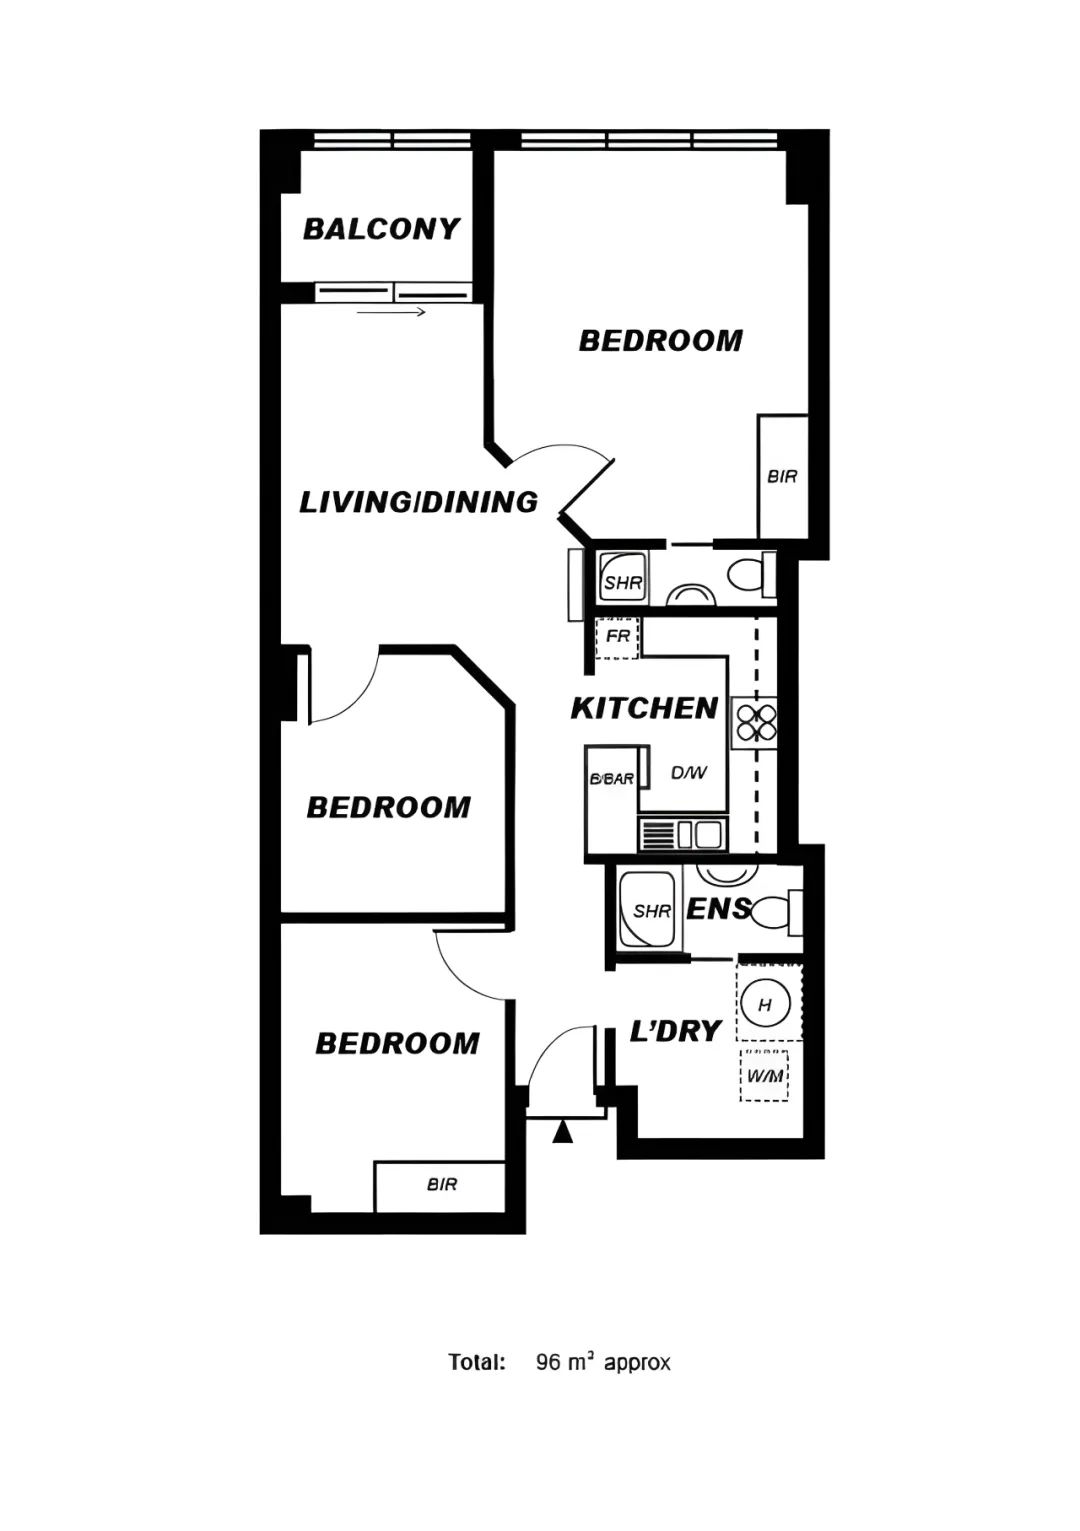 【科恩地产】市区公寓出售 楼内唯一3房 正对Rundle购物街 19年翻新 销售包括家具-7.jpg